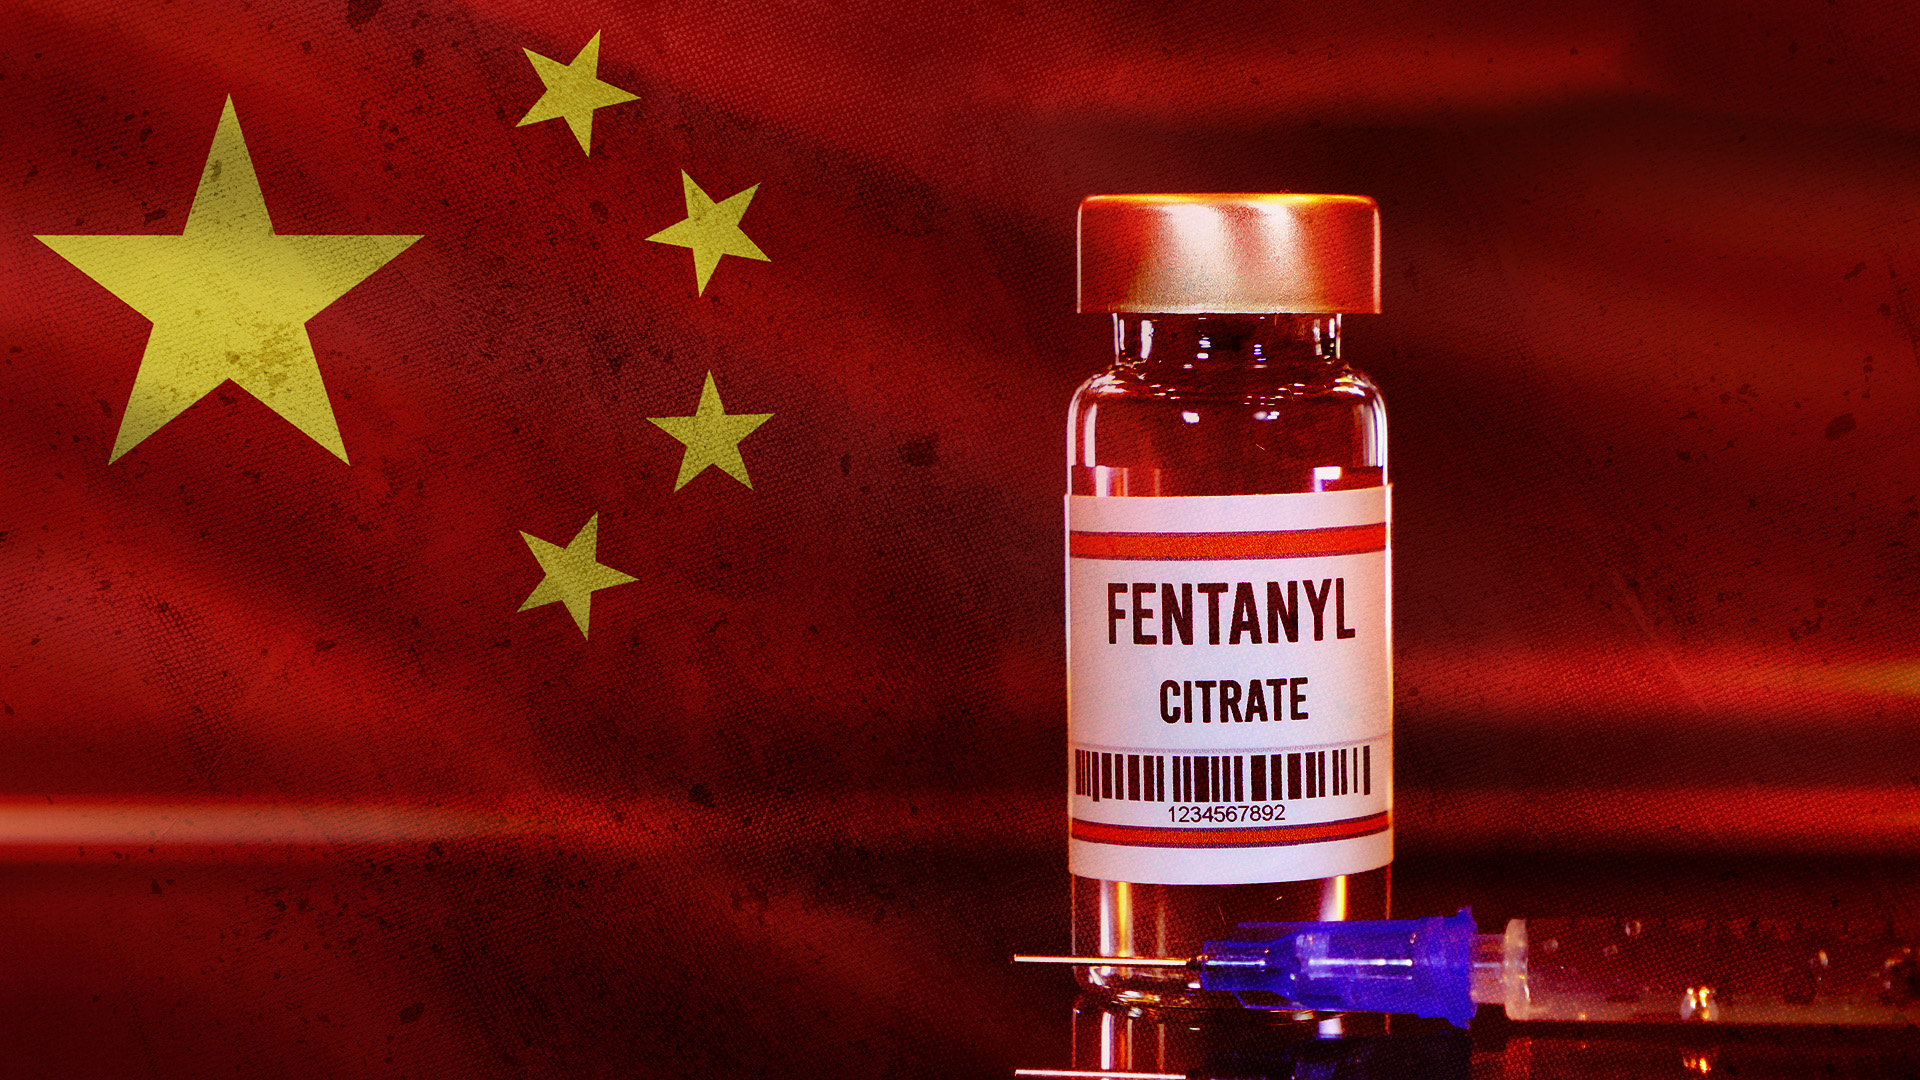 La epidemia de fentanilo que viven países como Estados Unidos y Canadá es provocada por la red de laboratorios clandestinos chinos que producen el medicamento de manera irregular y sin control estatal (Infobae)